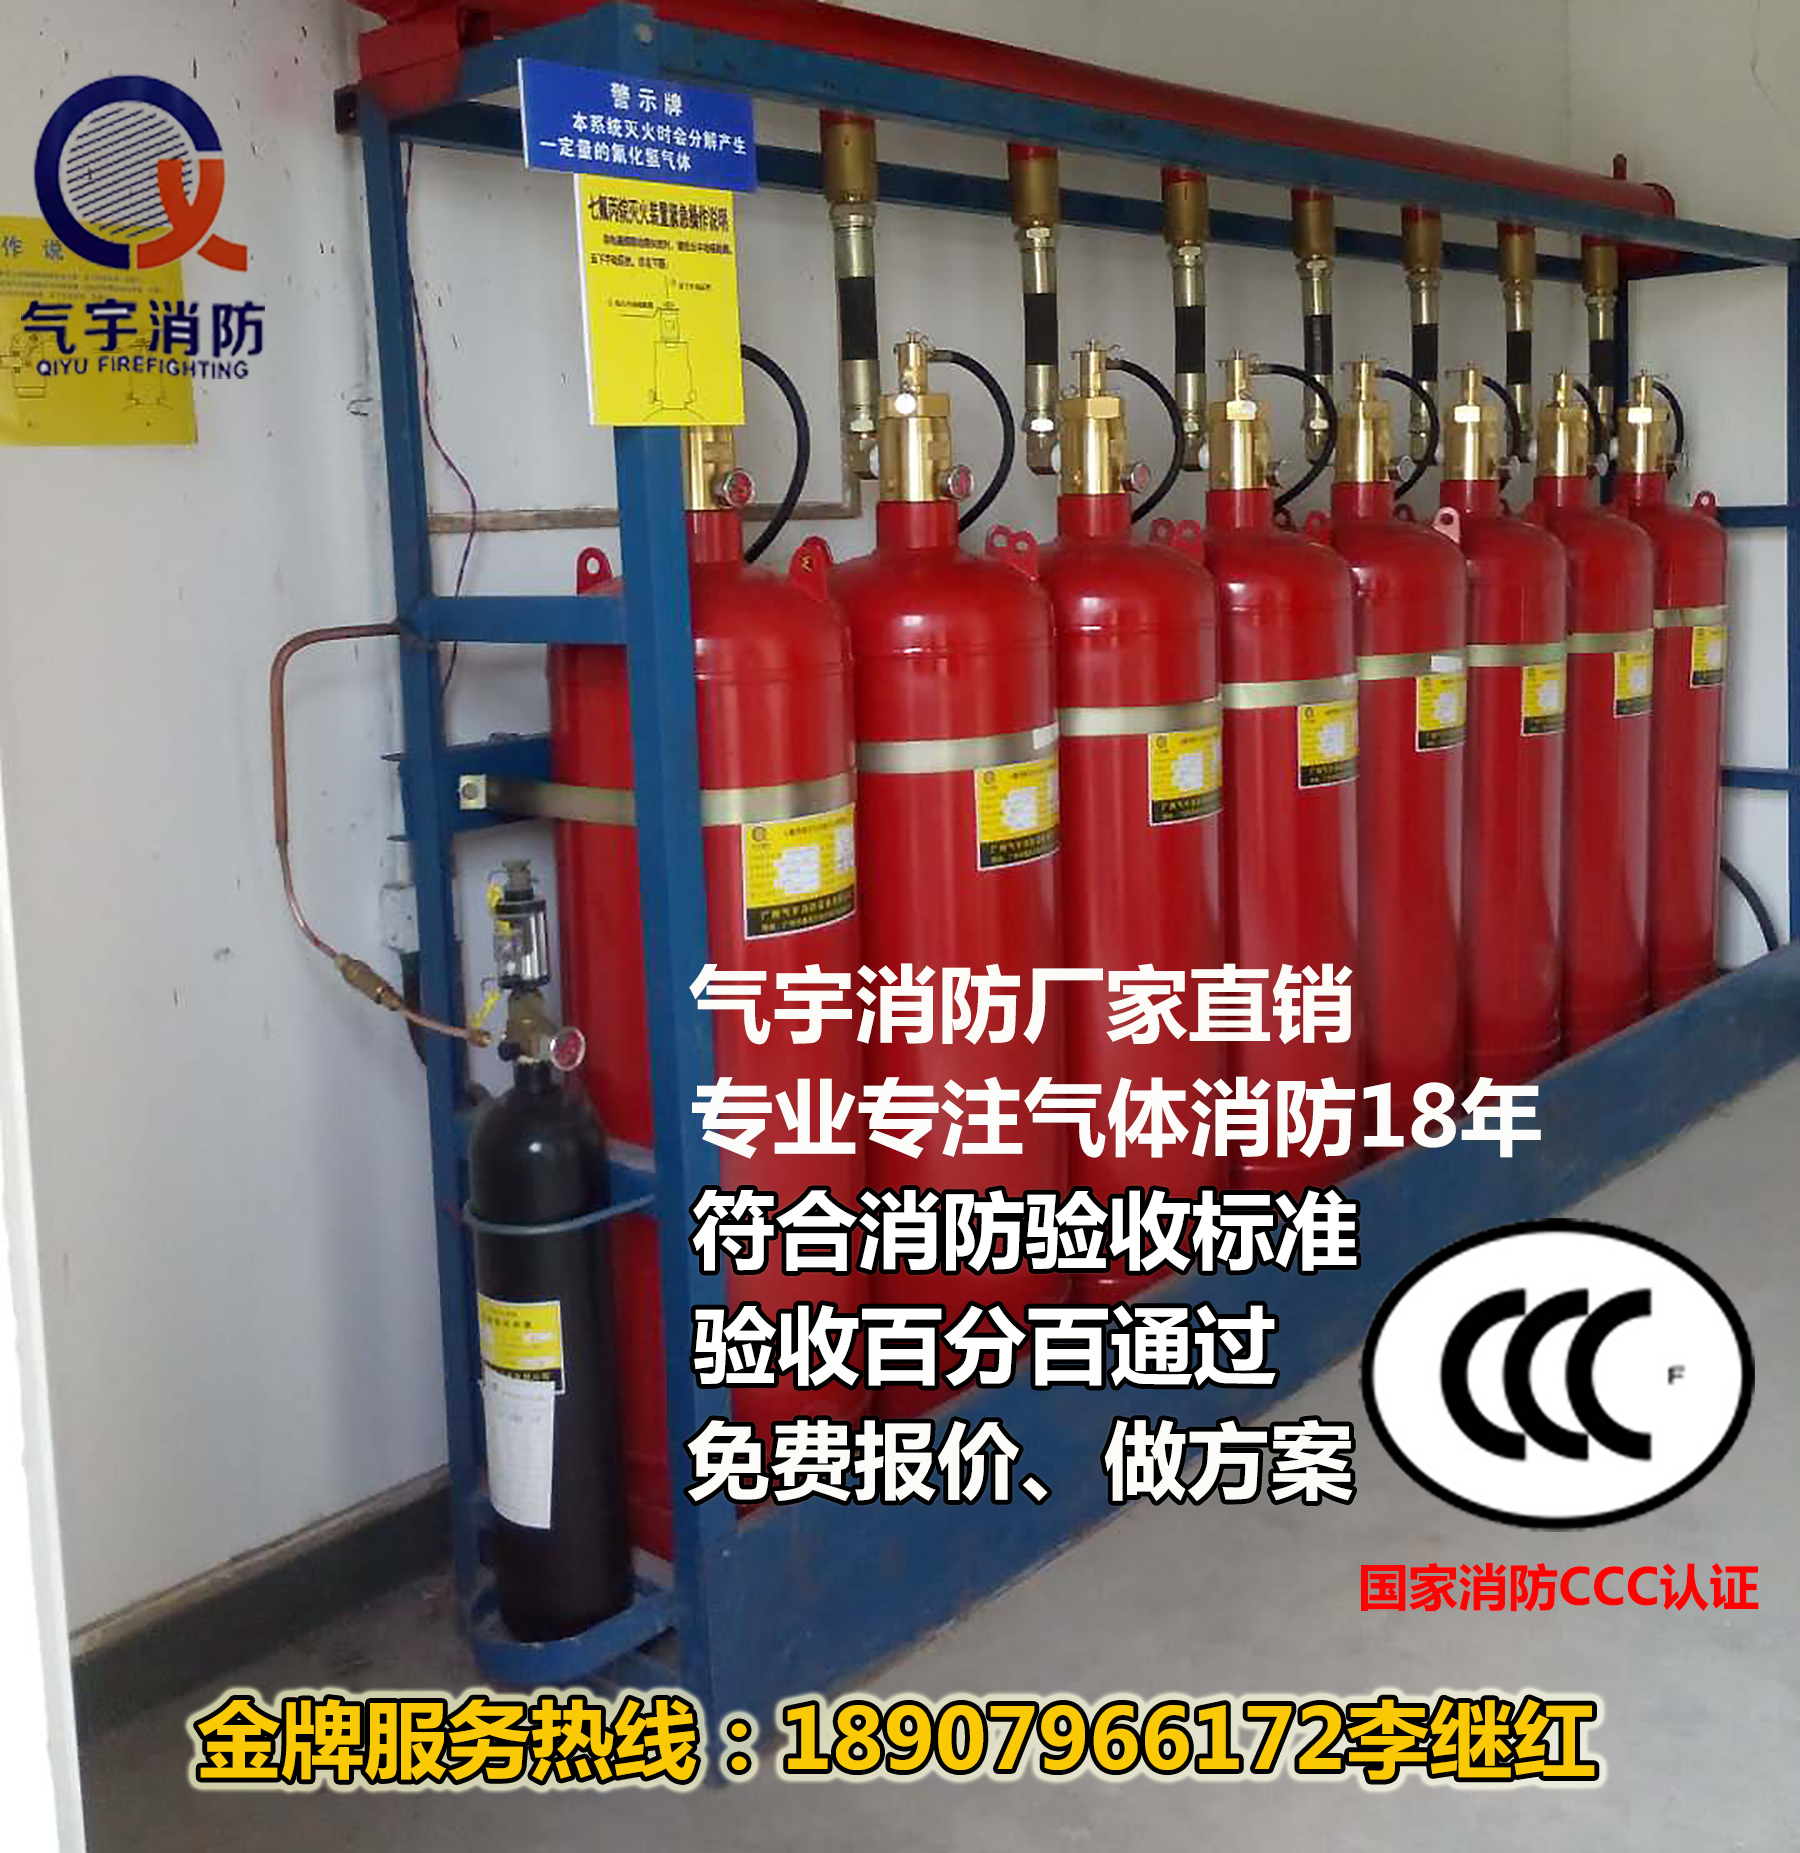 四川省成都专业生产 有管网七氟丙烷气体灭火系统装置 广州气宇厂家直销报价图片